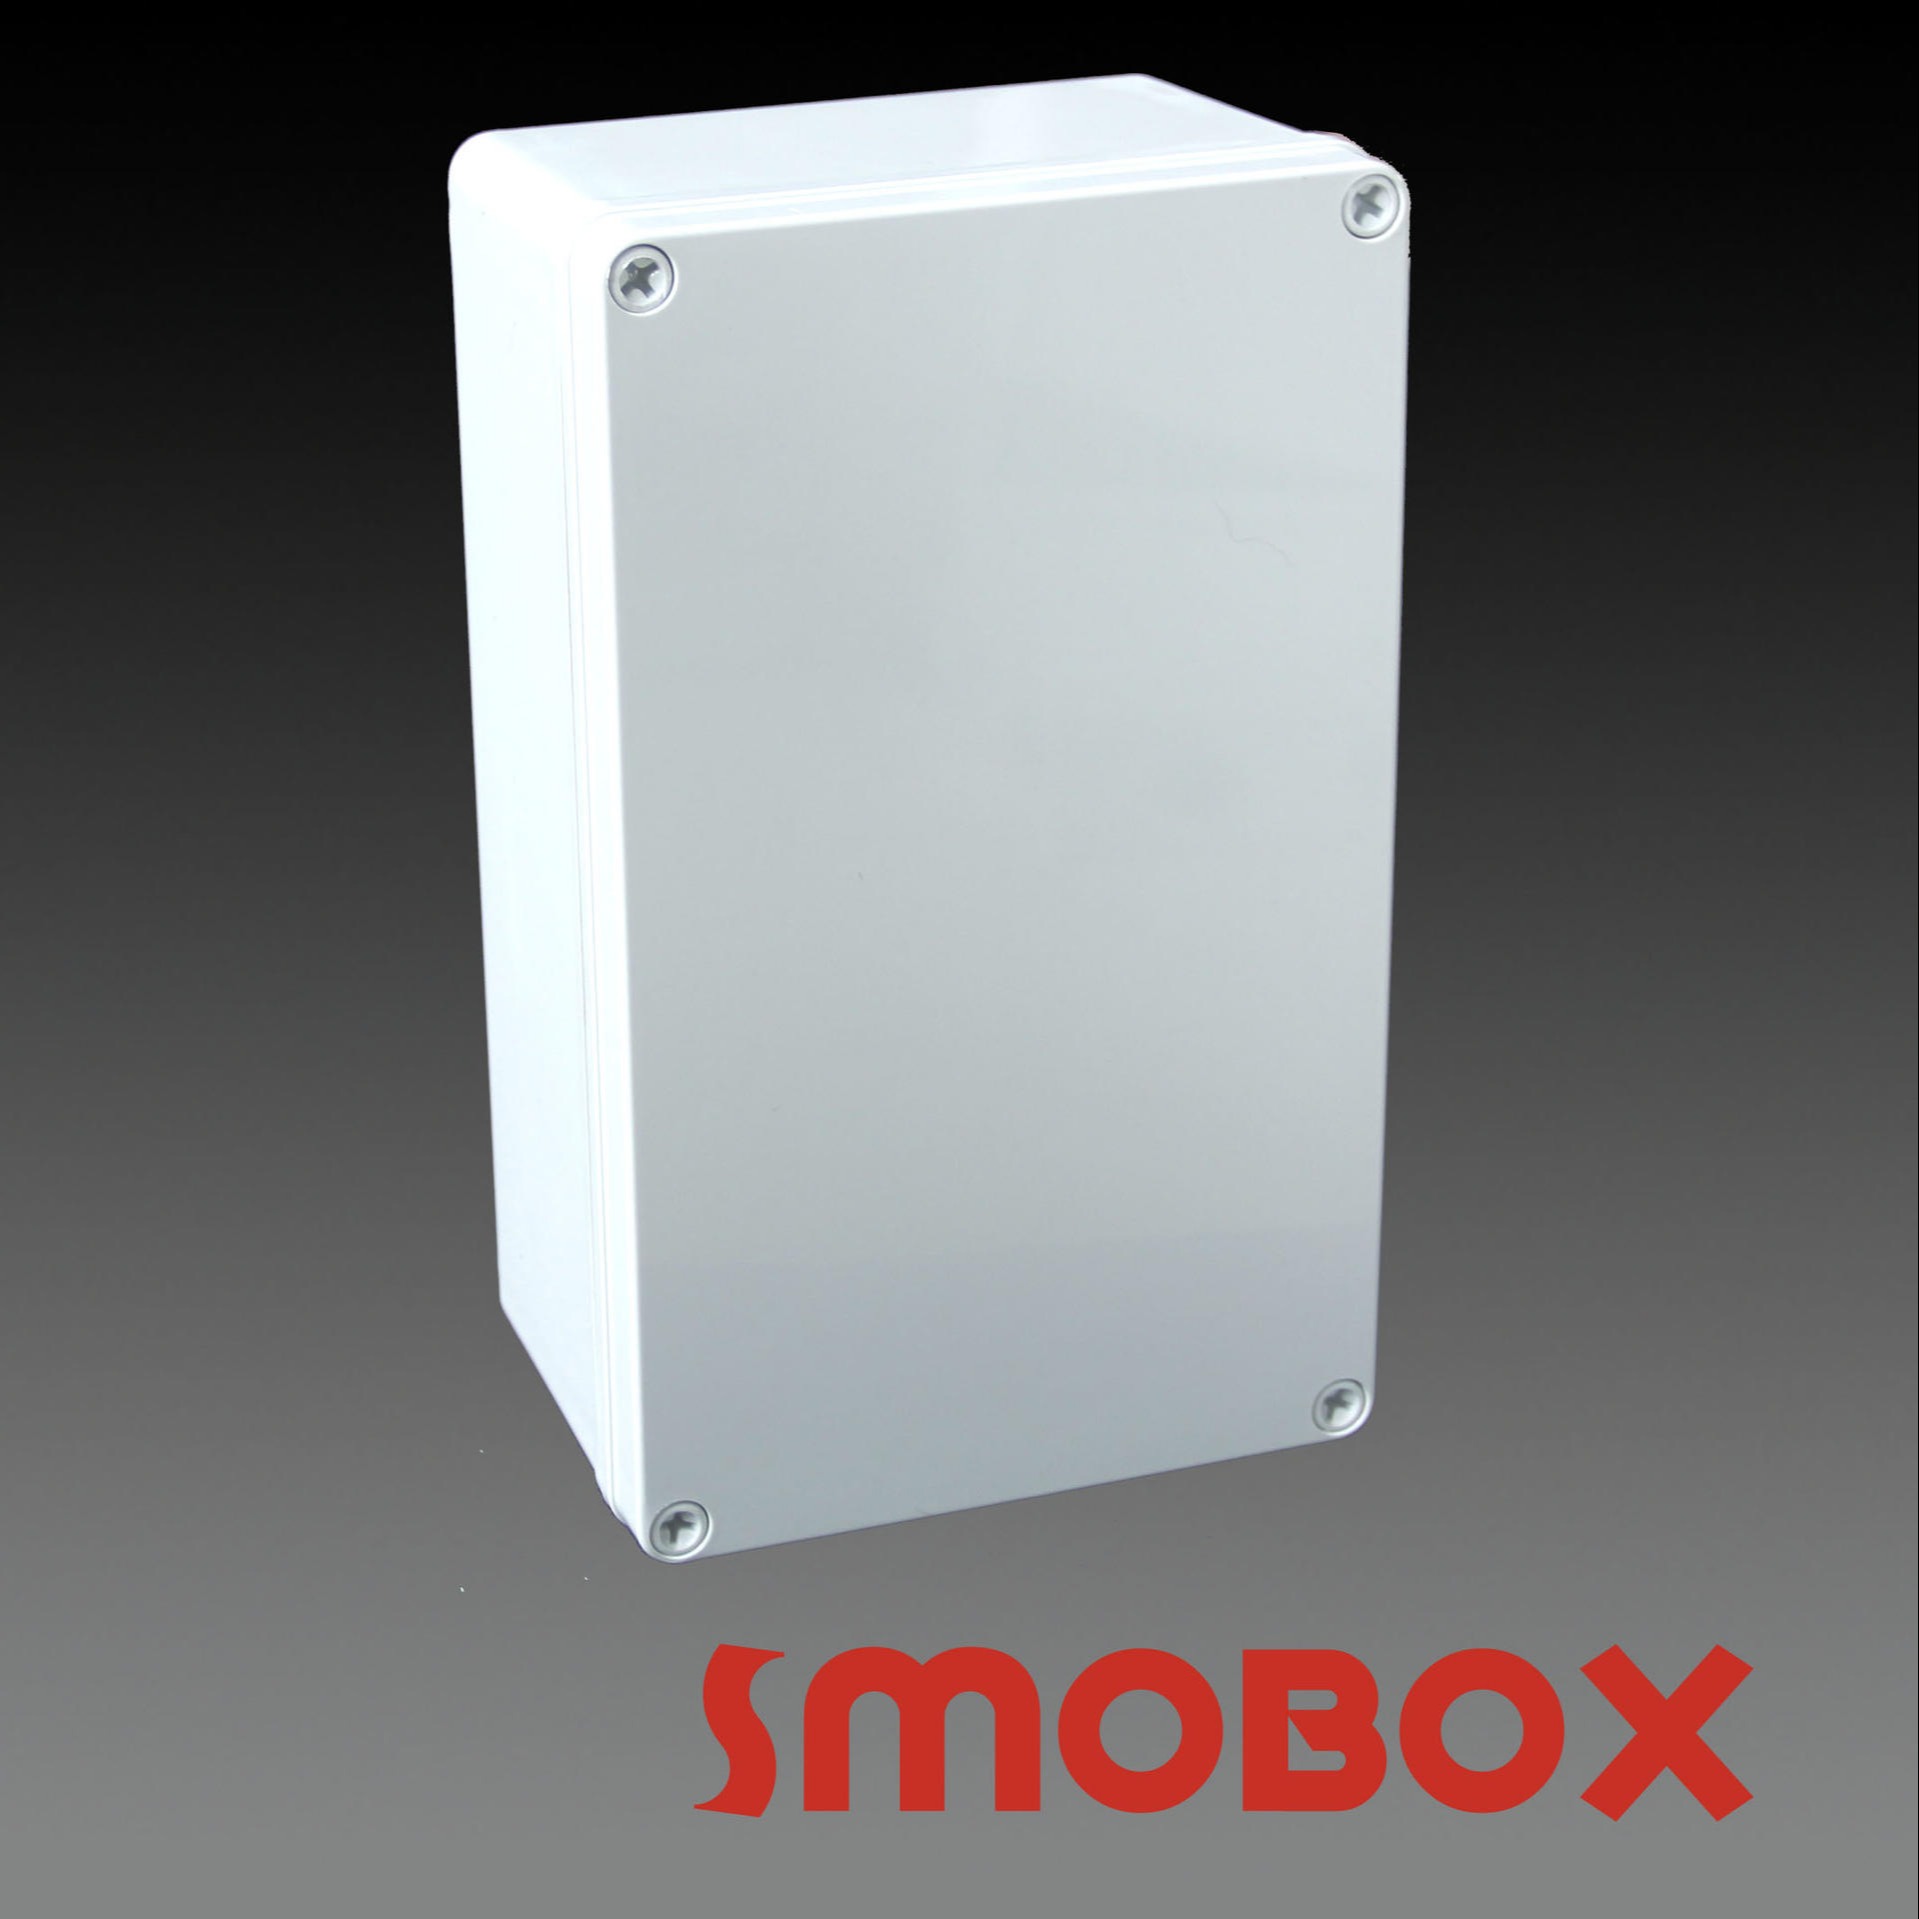 SMOBOX塑料接线箱LD-172510 螺钉款式塑料接线盒  塑料配电箱 外壳可定制各种开关箱 终端箱壳体 优选材料